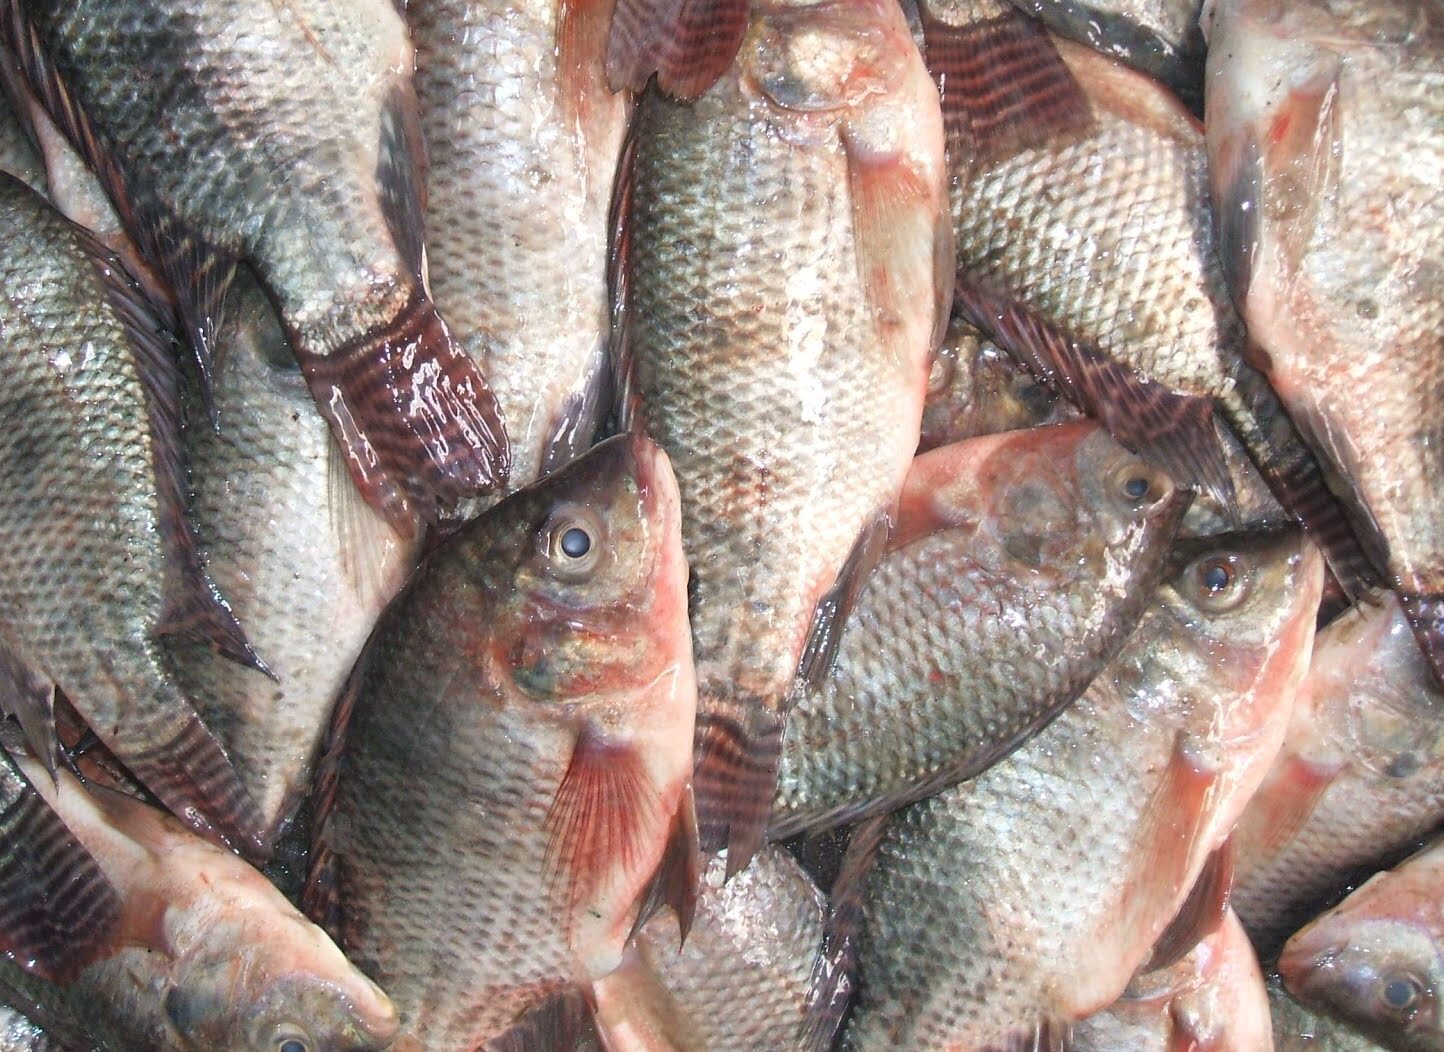 أسعار الأسماك اليوم السبت